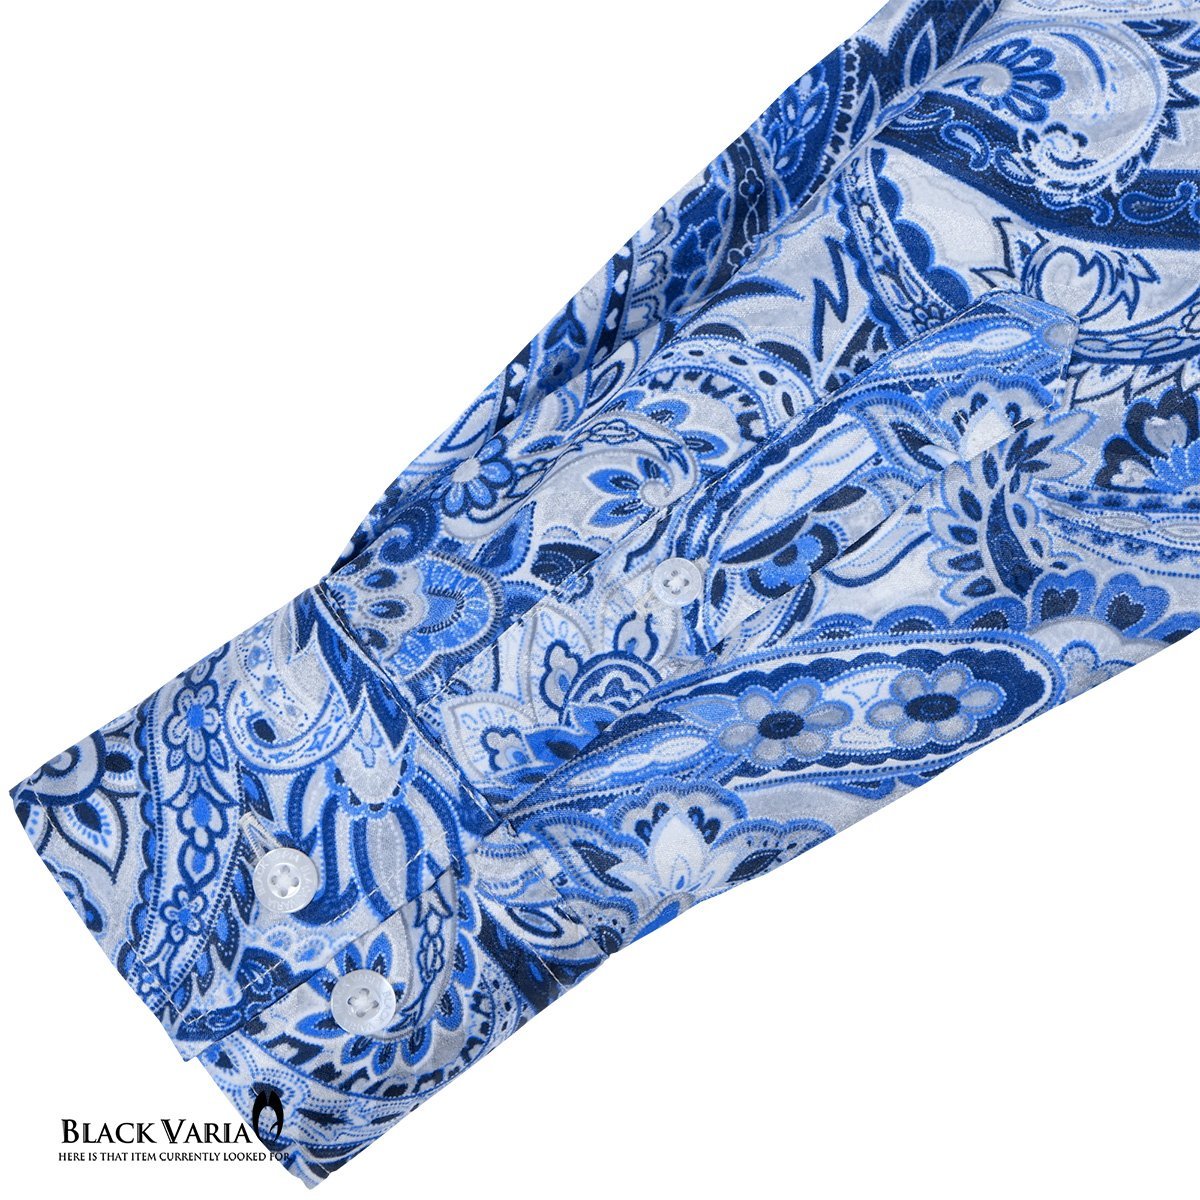 a231902-bl BlackVaria サテンシャツ ドゥエボットーニ ペイズリー柄 ドレスシャツ 長袖レギュラーカラー ジャガード メンズ(ブルー青) XL_画像4